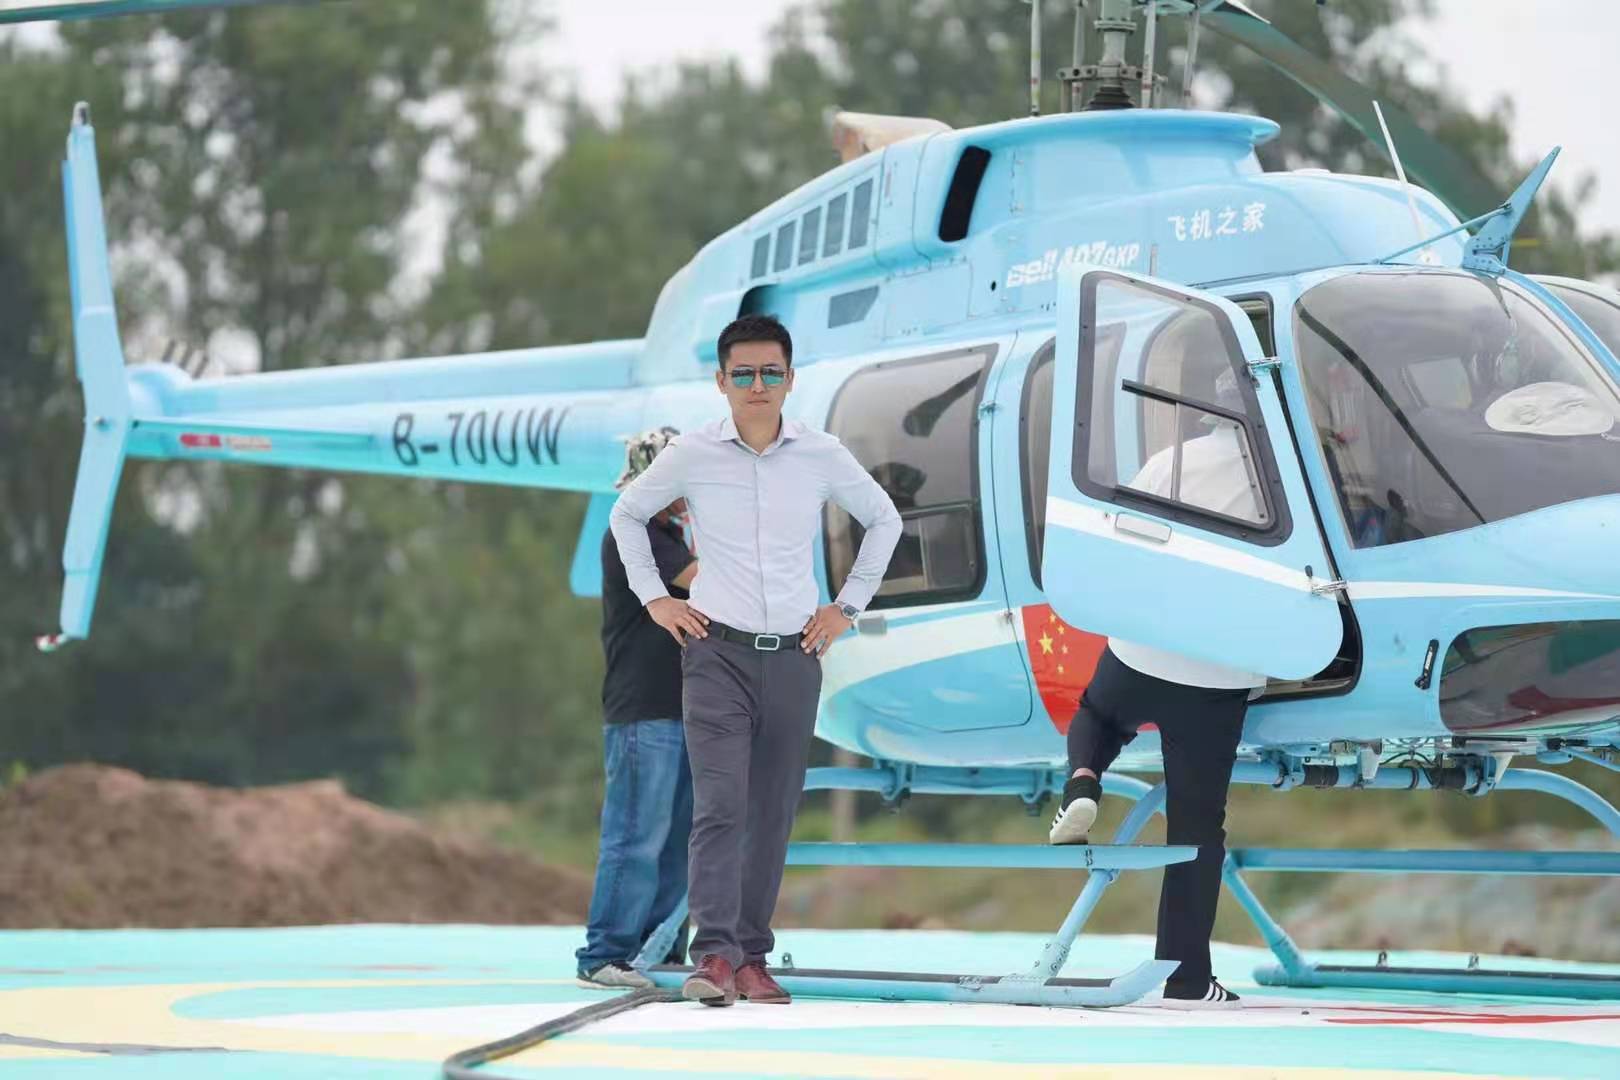 直升机婚礼  山东省内直升机婚礼优惠  直升机结婚  直升机接亲图片